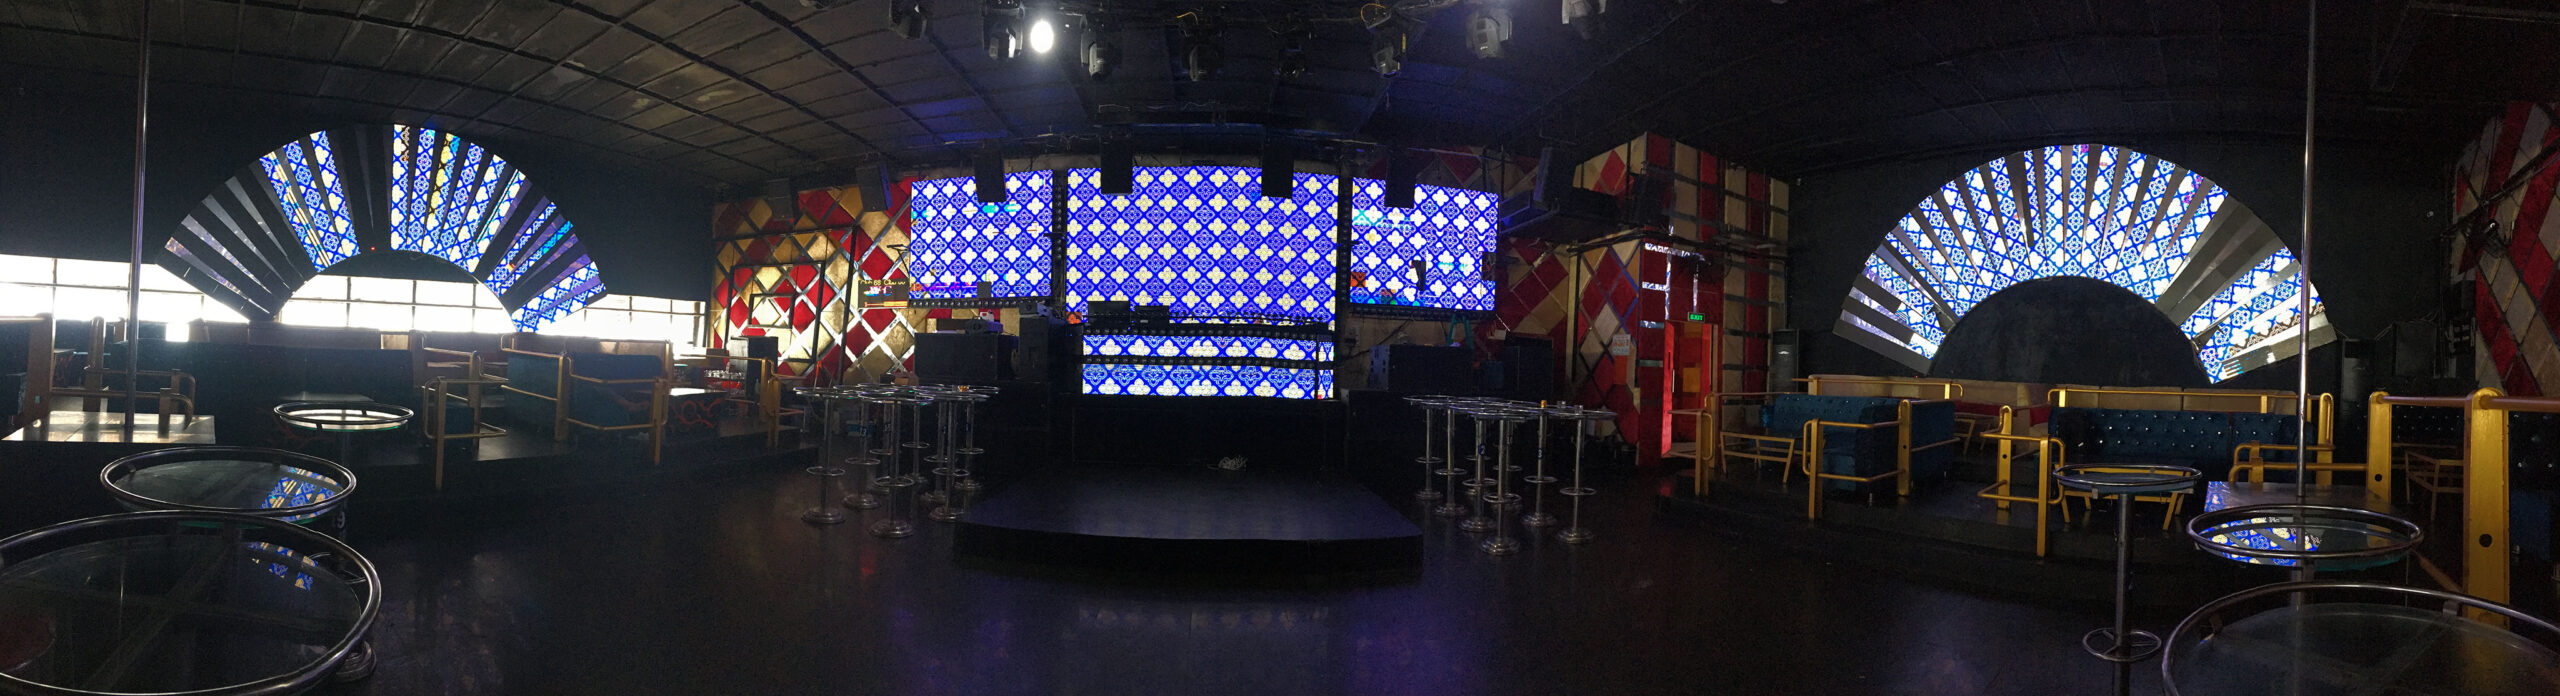 Hệ thống ánh sáng - Màn hình LED cho quán Club 68.